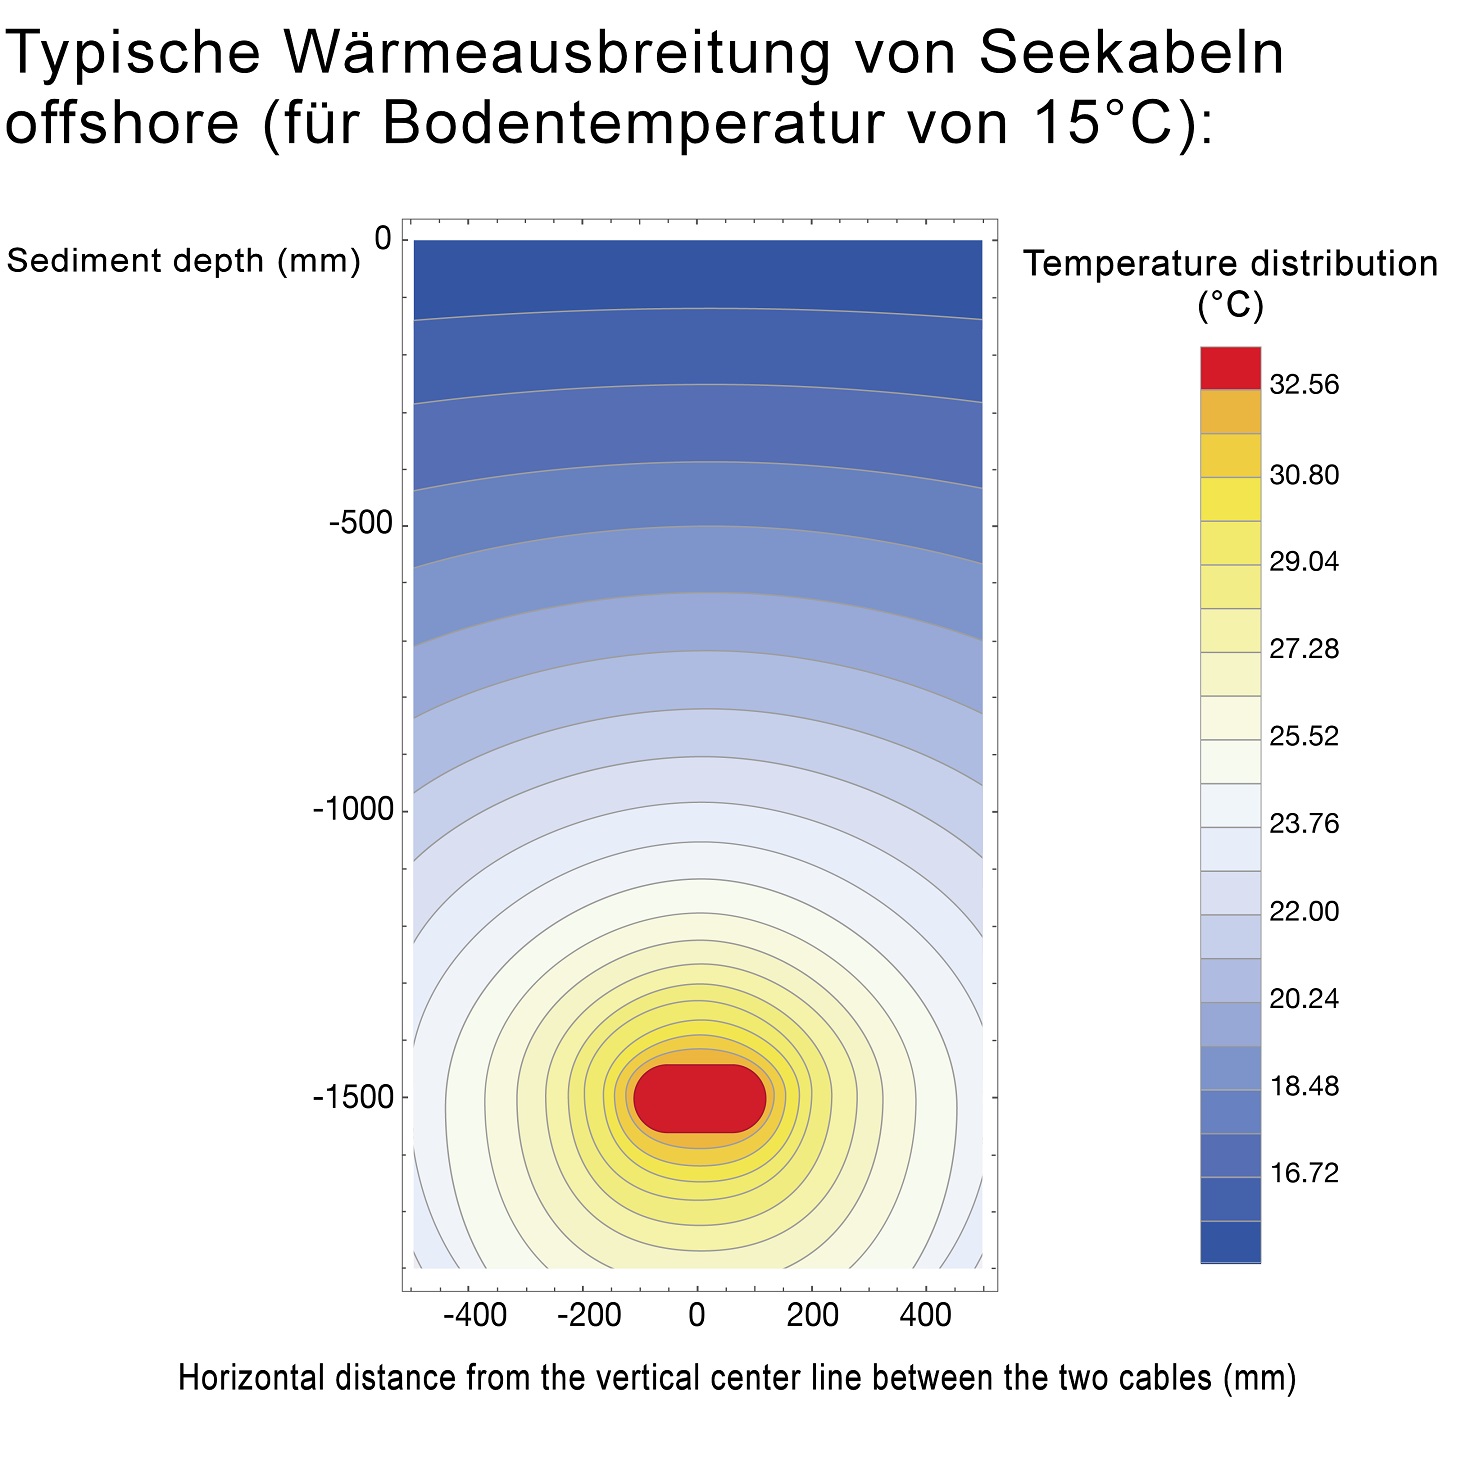 Typische Wärmeausbreitung von Seekabeln für eine Bodentemperatur von 15 °C